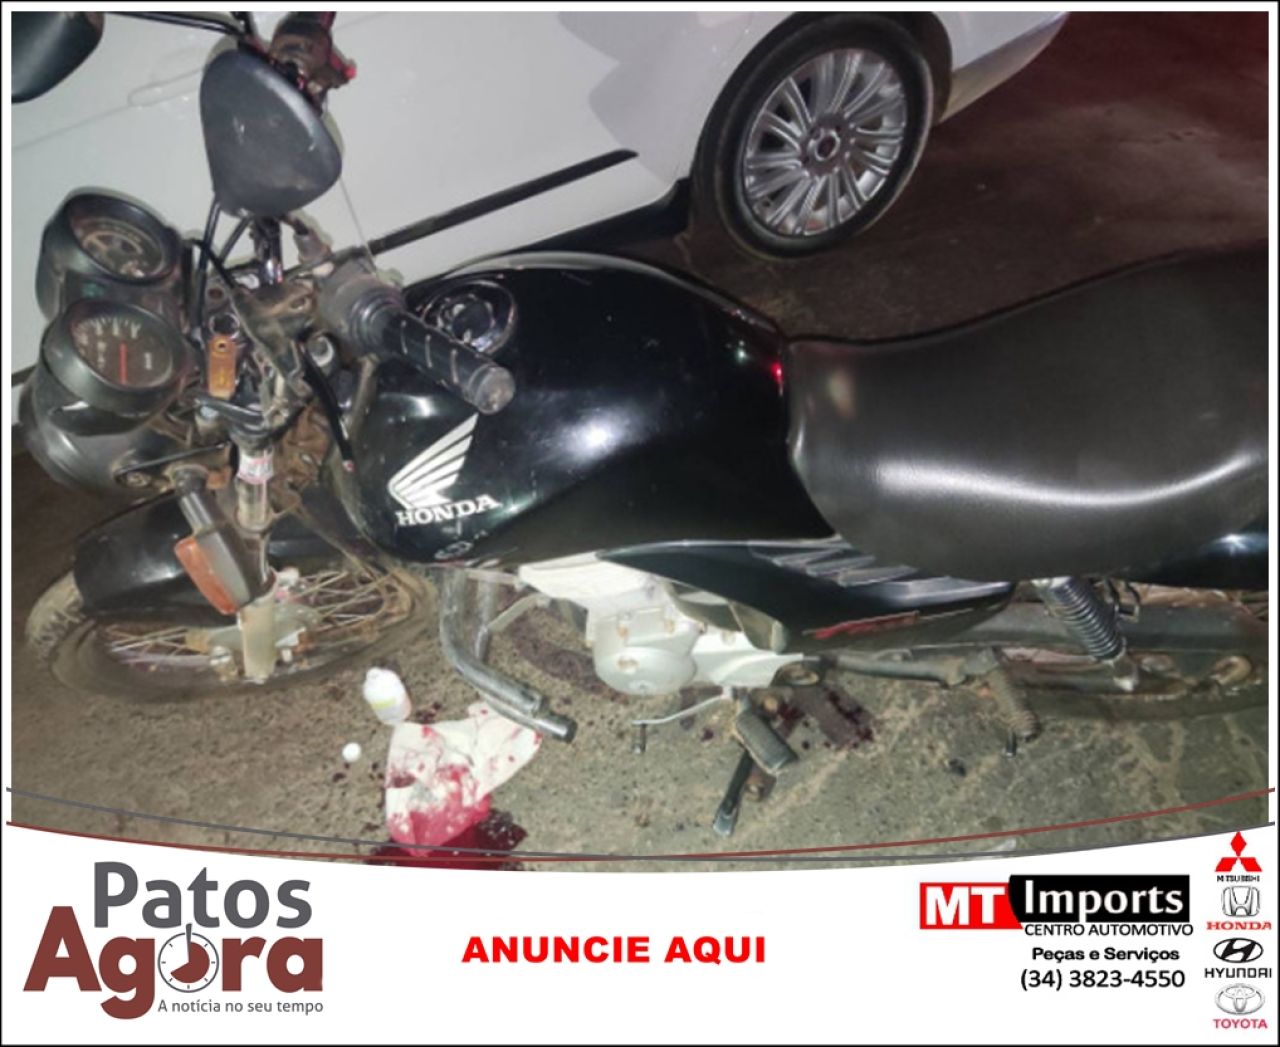 Motociclista com sintomas de embriaguez fica ferido ao colidir em carro na Av. Afonso Queiroz